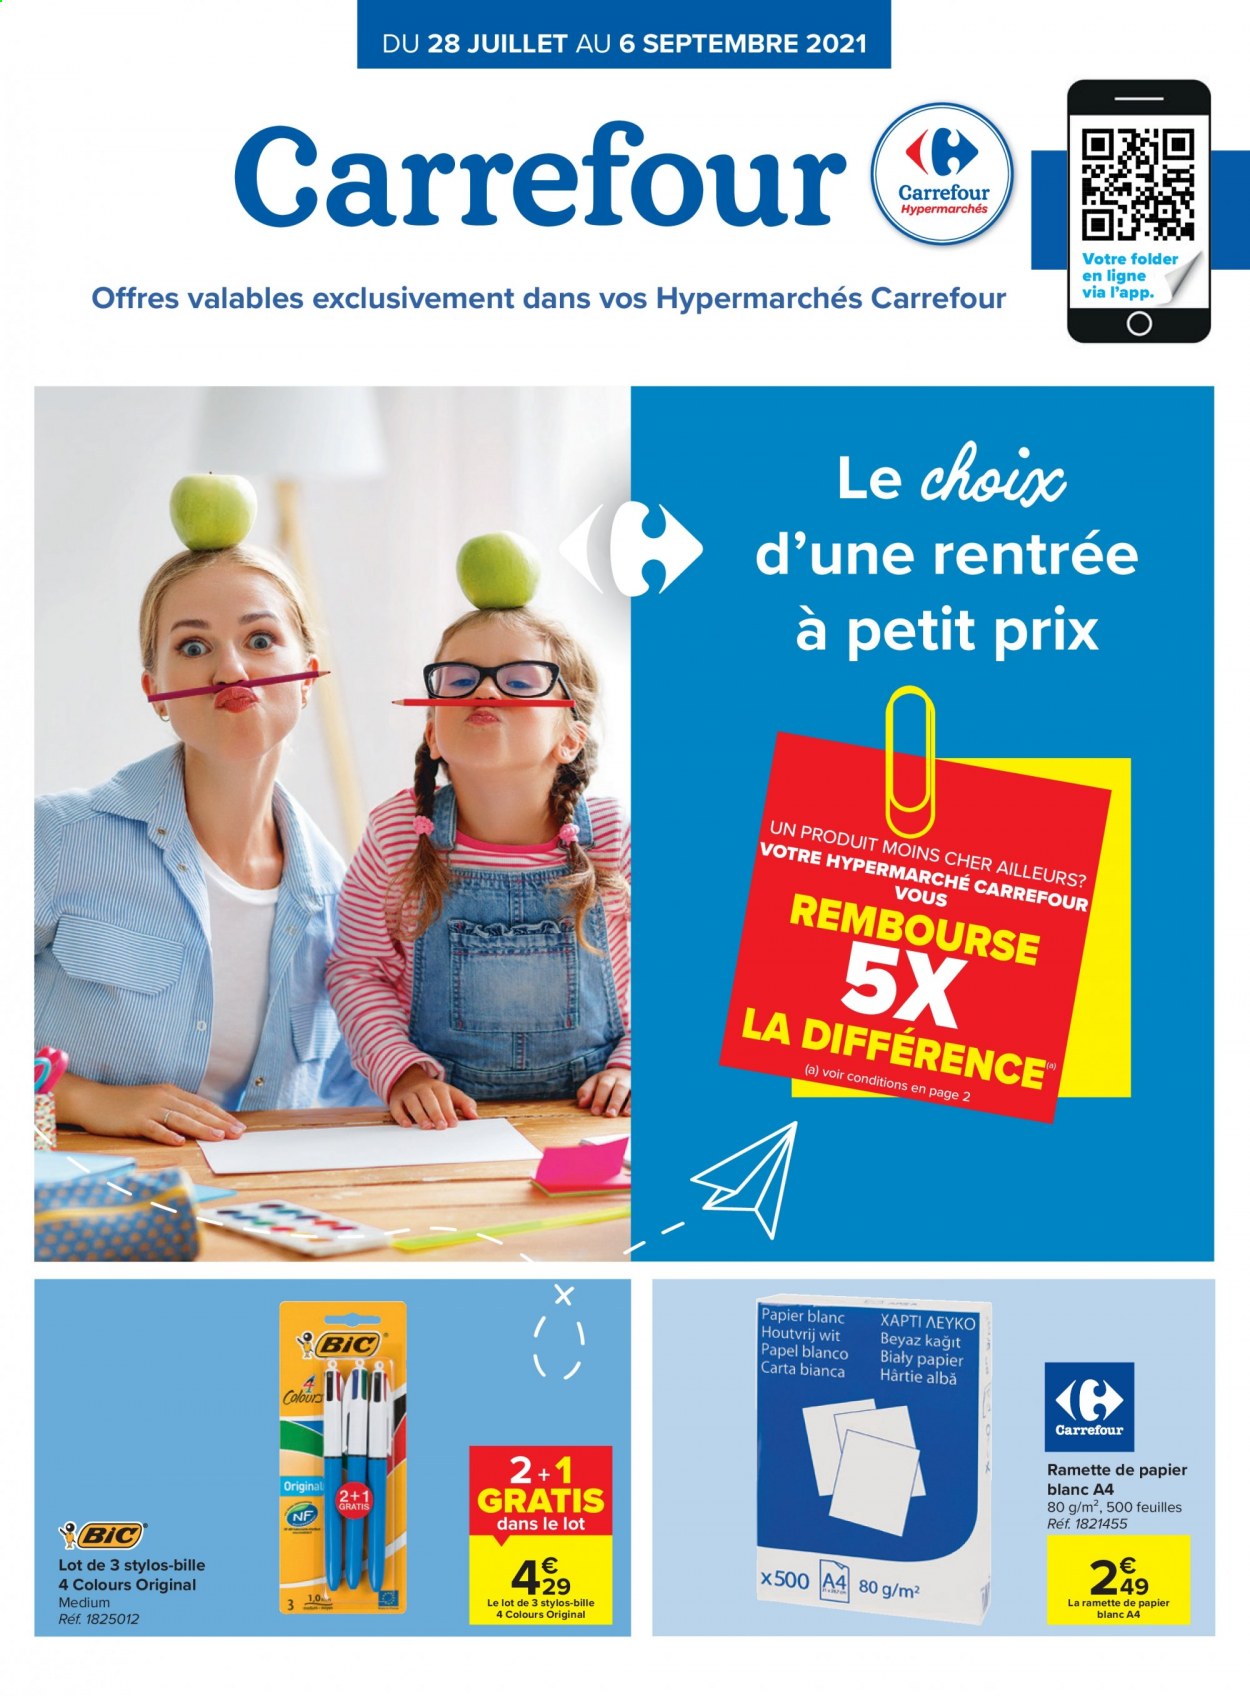 thumbnail - Catalogue Carrefour hypermarkt - 28/07/2021 - 06/09/2021 - Produits soldés - BIC, stylo, ramette de papier. Page 1.